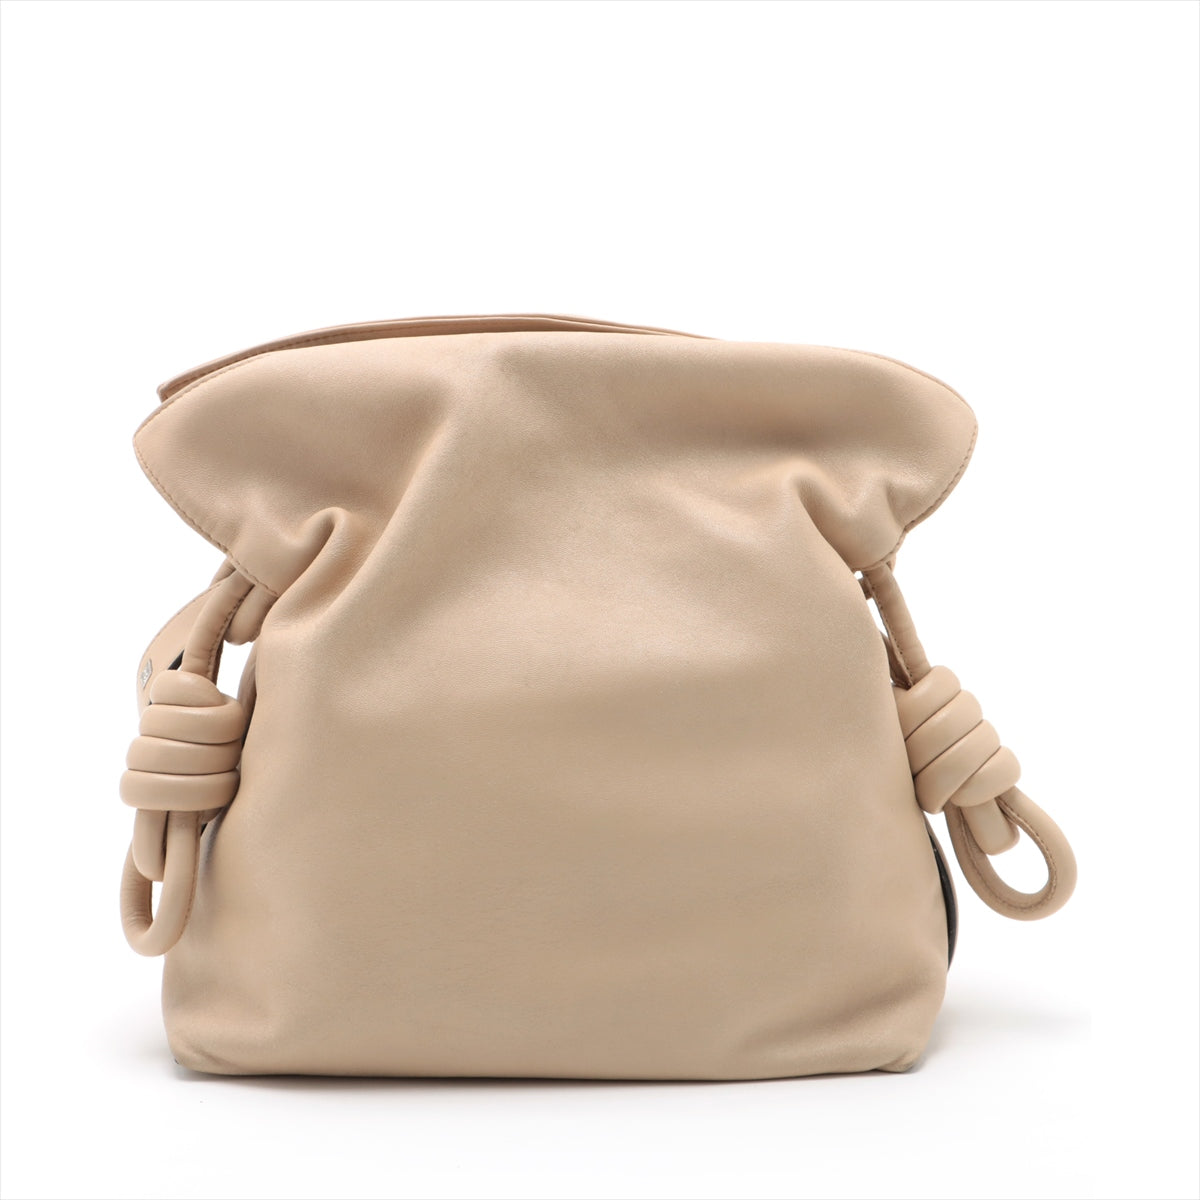 Loewe Flamenco Clutch Nappa leather Shoulder bag Beige